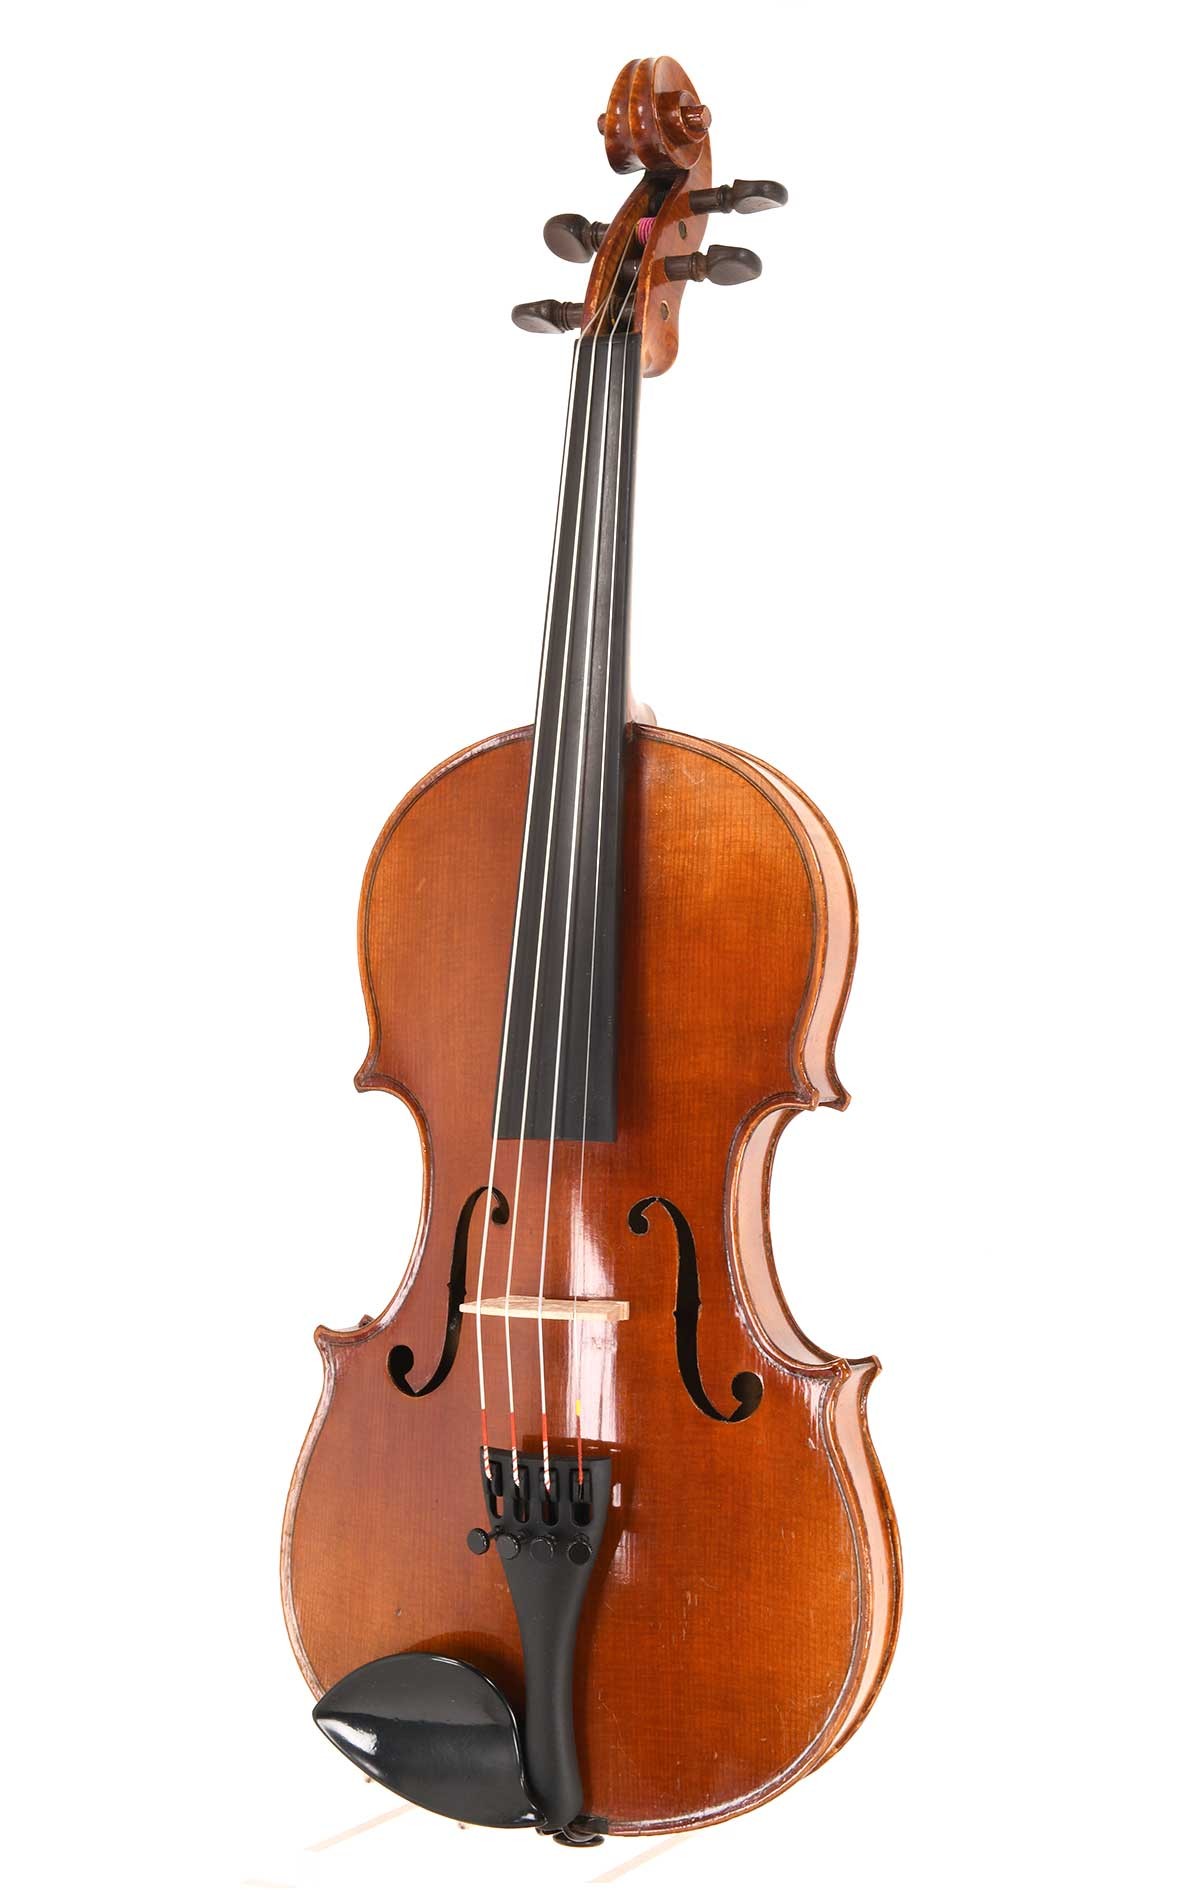 Petite French 1/2 violin, "Copie de Stradivarius"